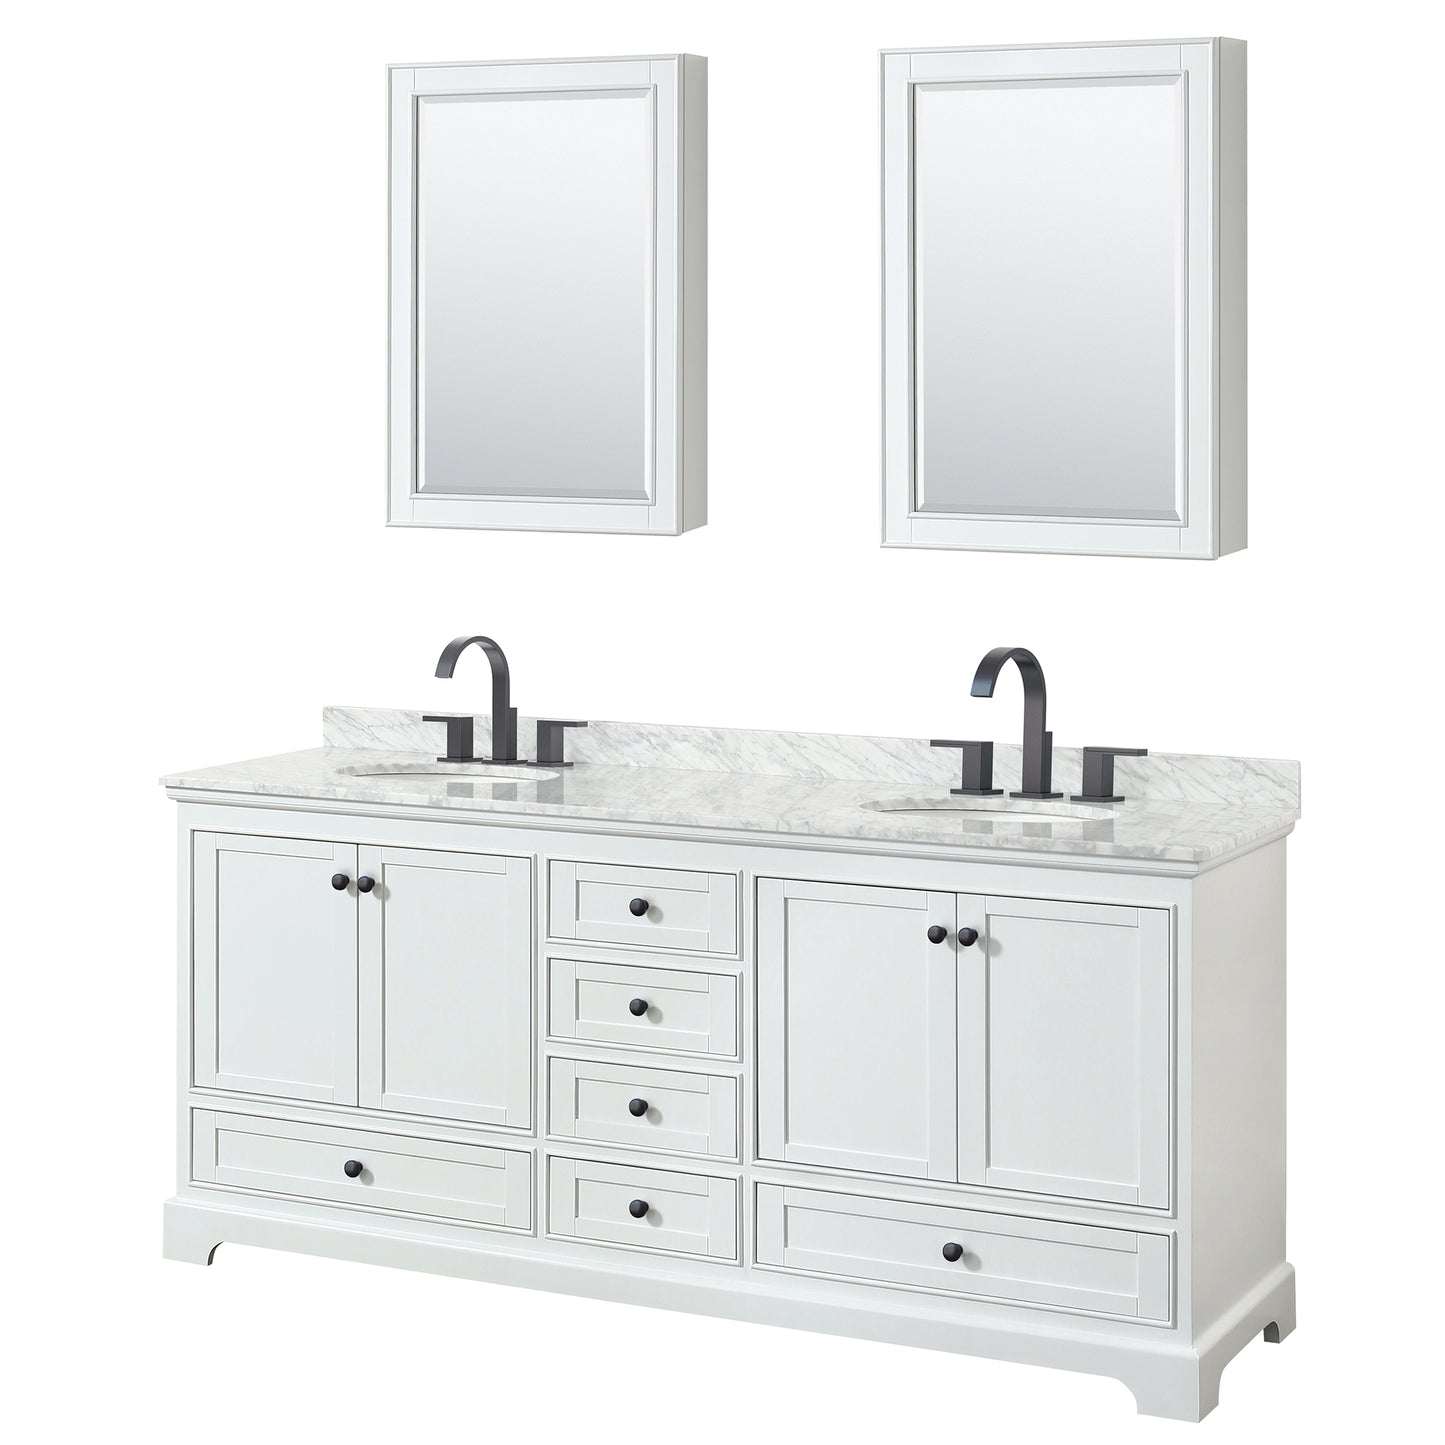 Wyndham Deborah 80 Inch Double Bathroom Vanity Undermount Oval Sinks in Matte Black Trim with Medicine Cabinets - Luxe Bathroom Vanities